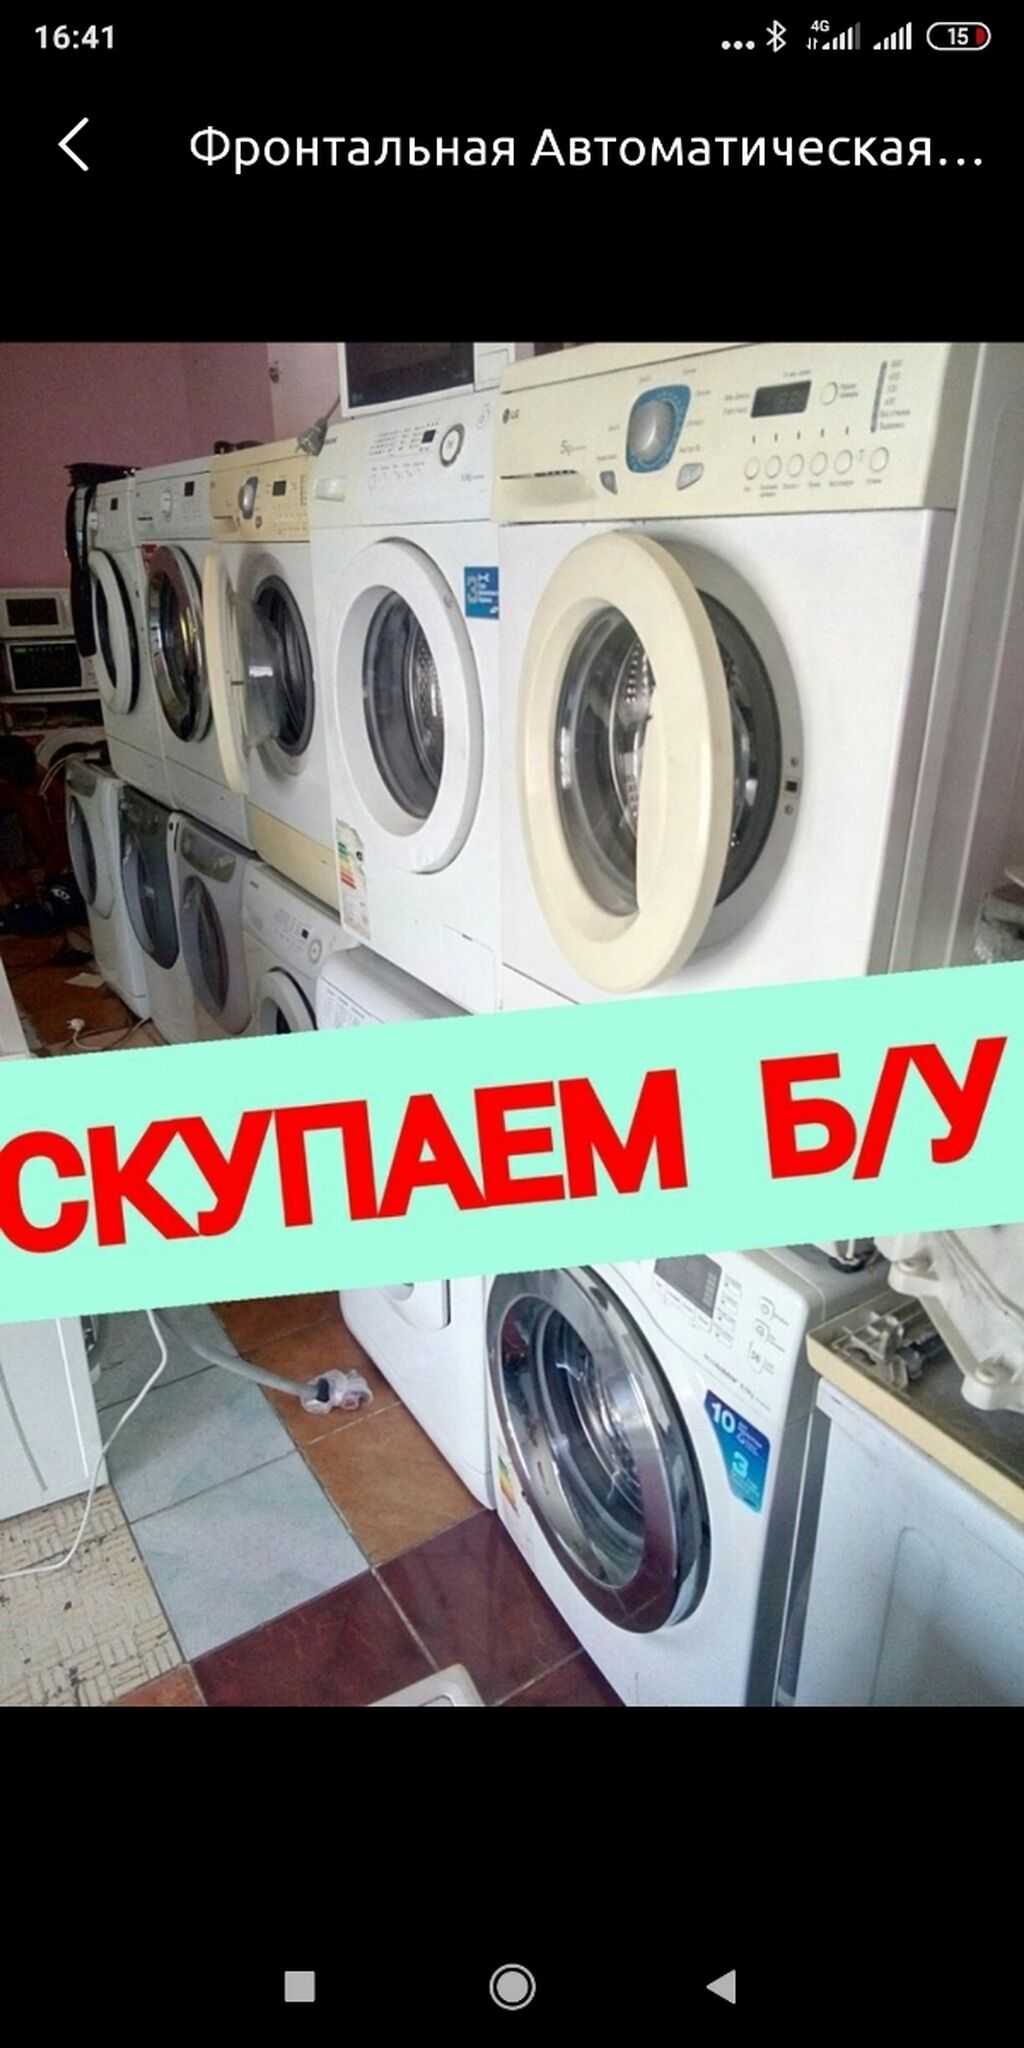 Как утилизировать стиральную машину